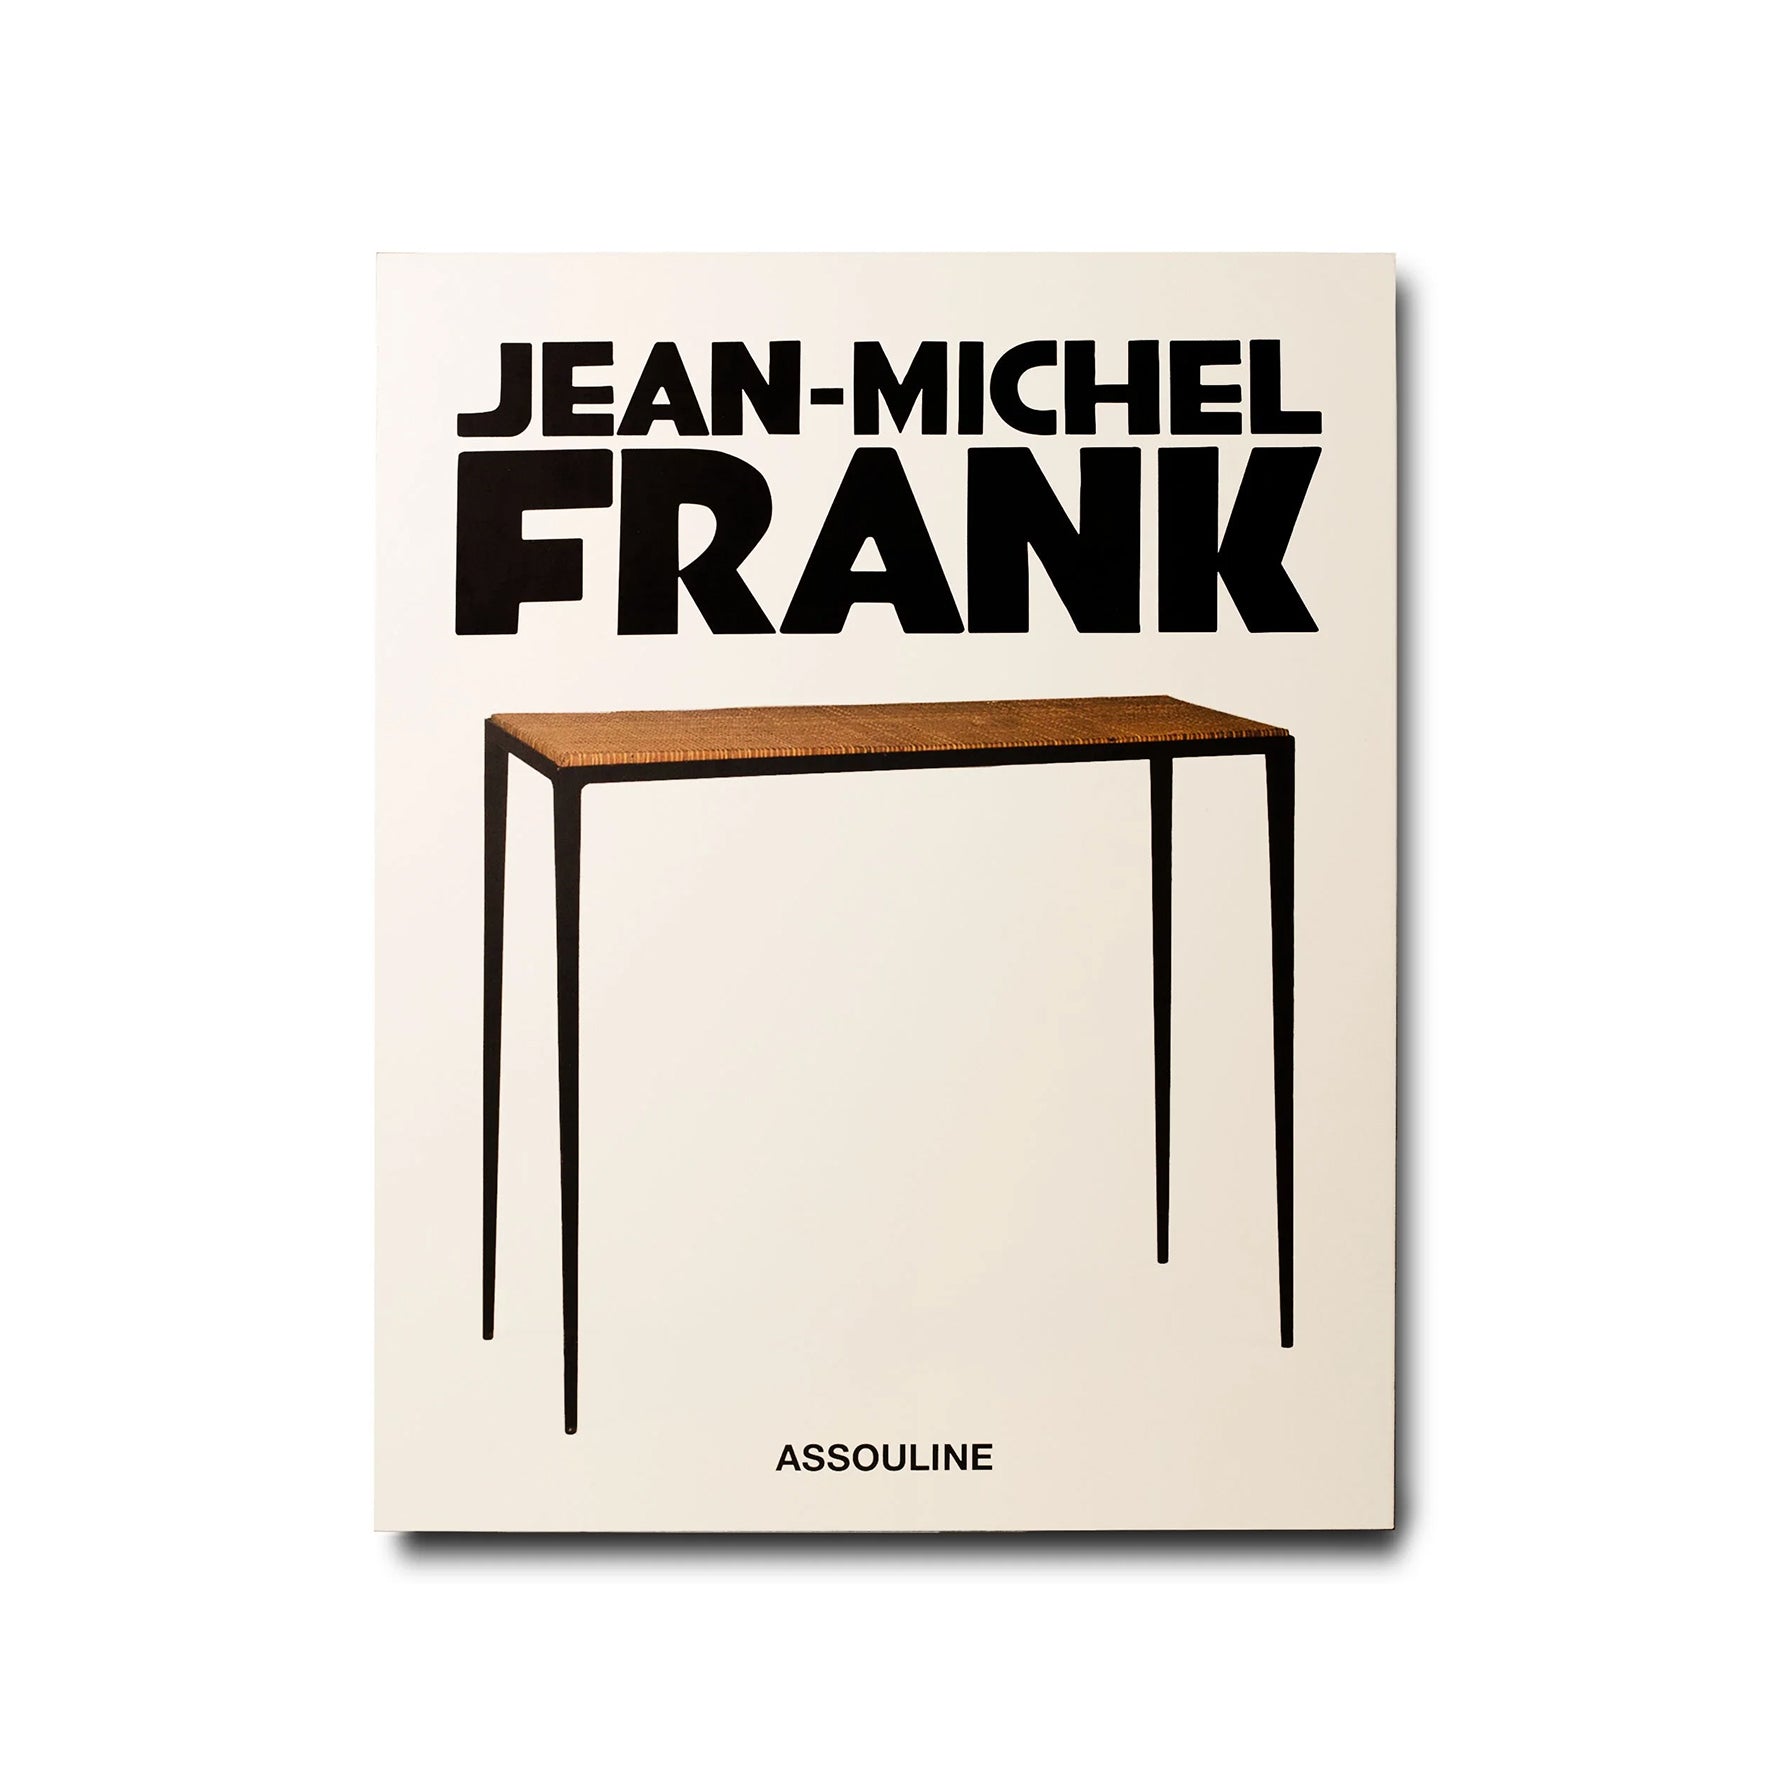 Jean-Michel Frank by Assouline